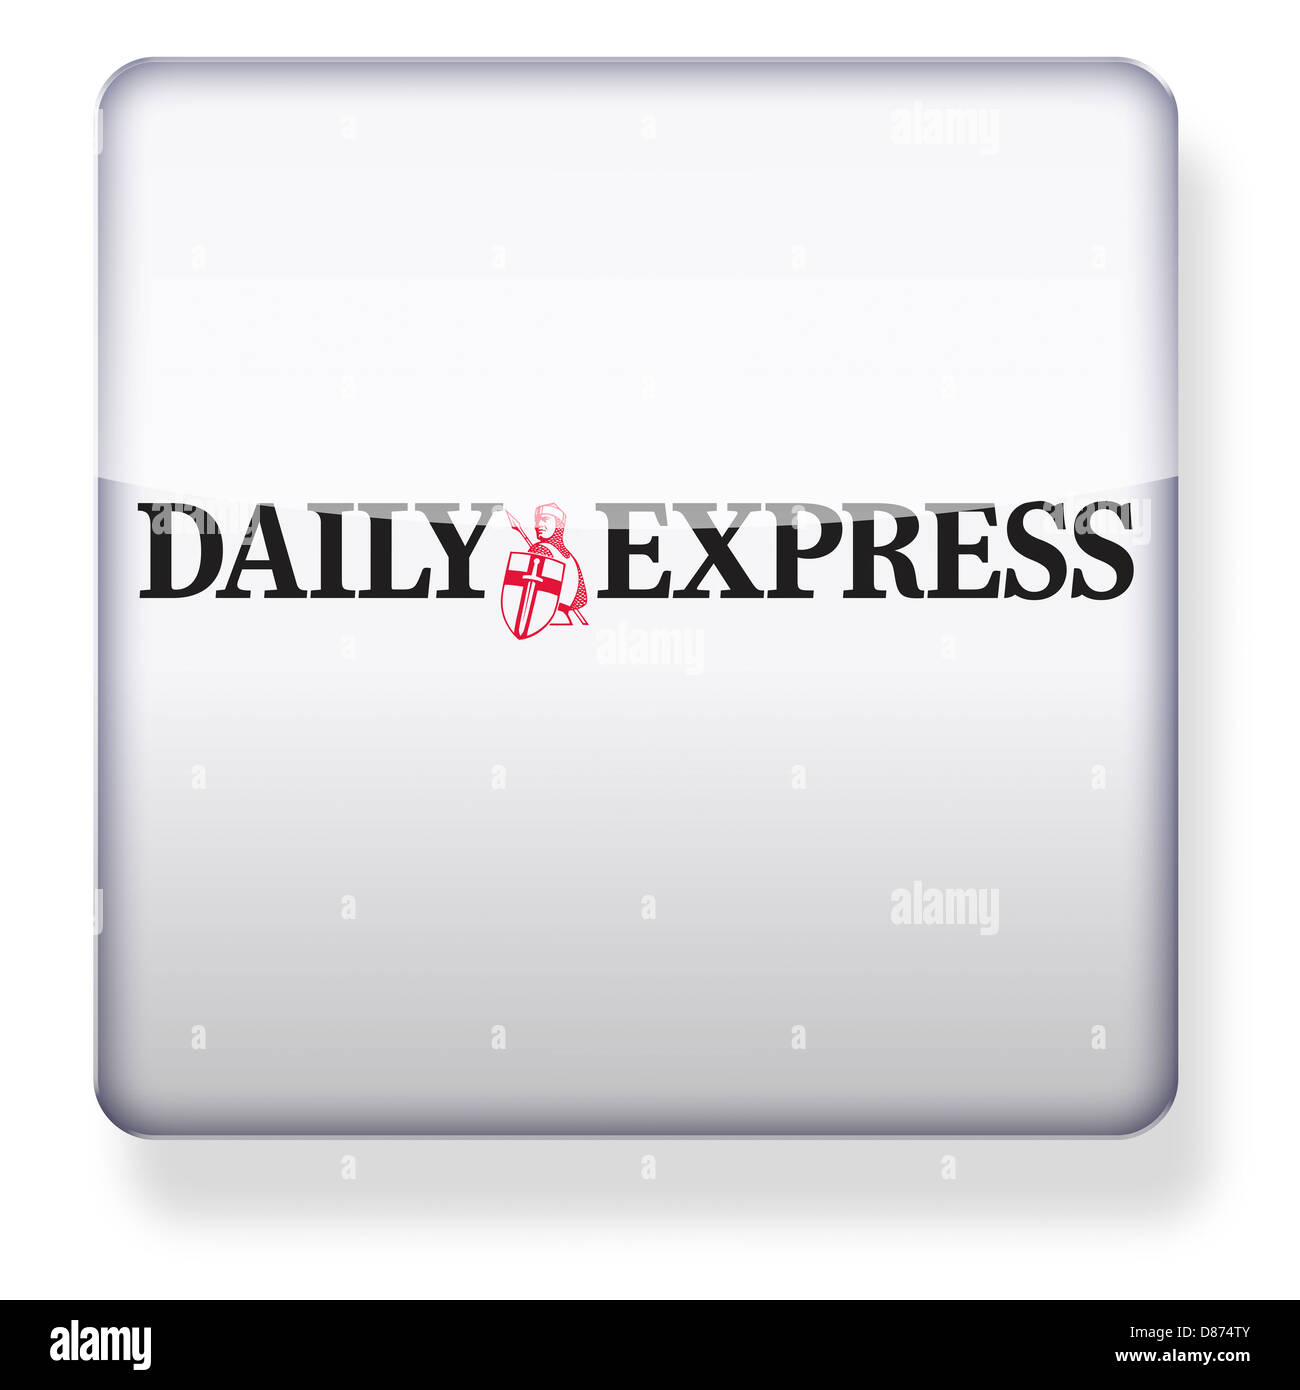 Daily Express logo comme une icône de l'application. Chemin de détourage inclus. Banque D'Images